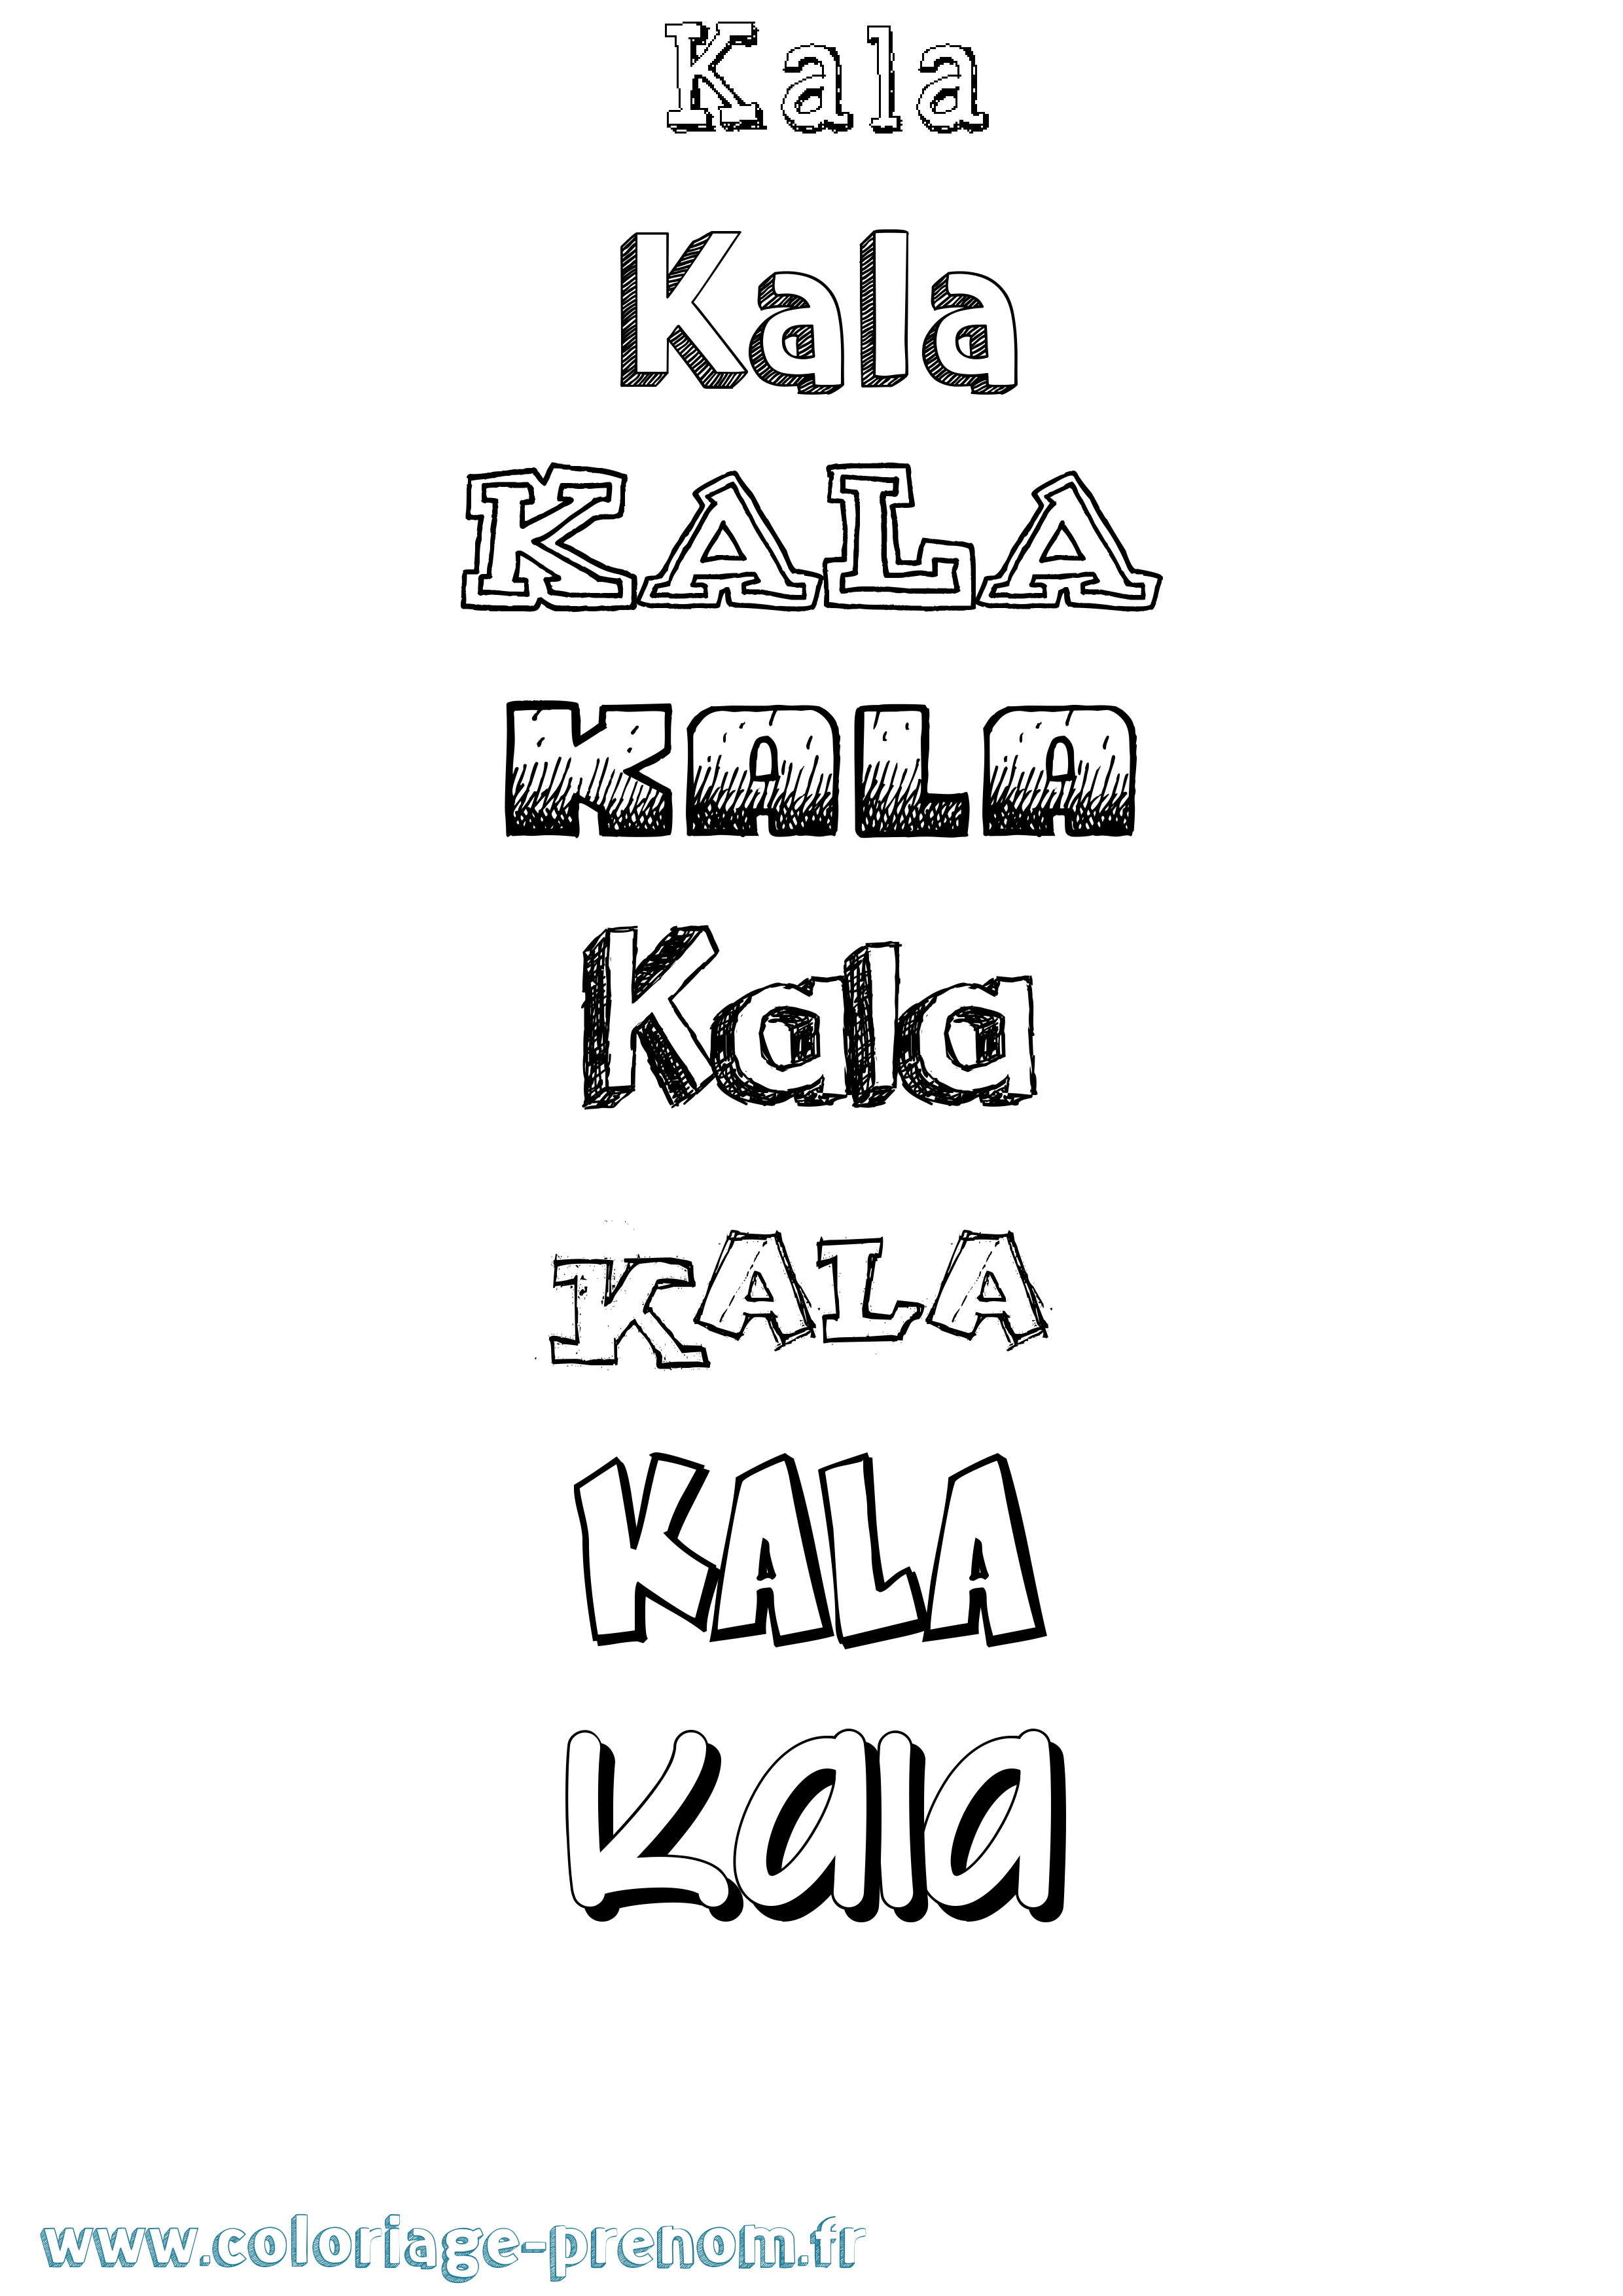 Coloriage prénom Kala Dessiné